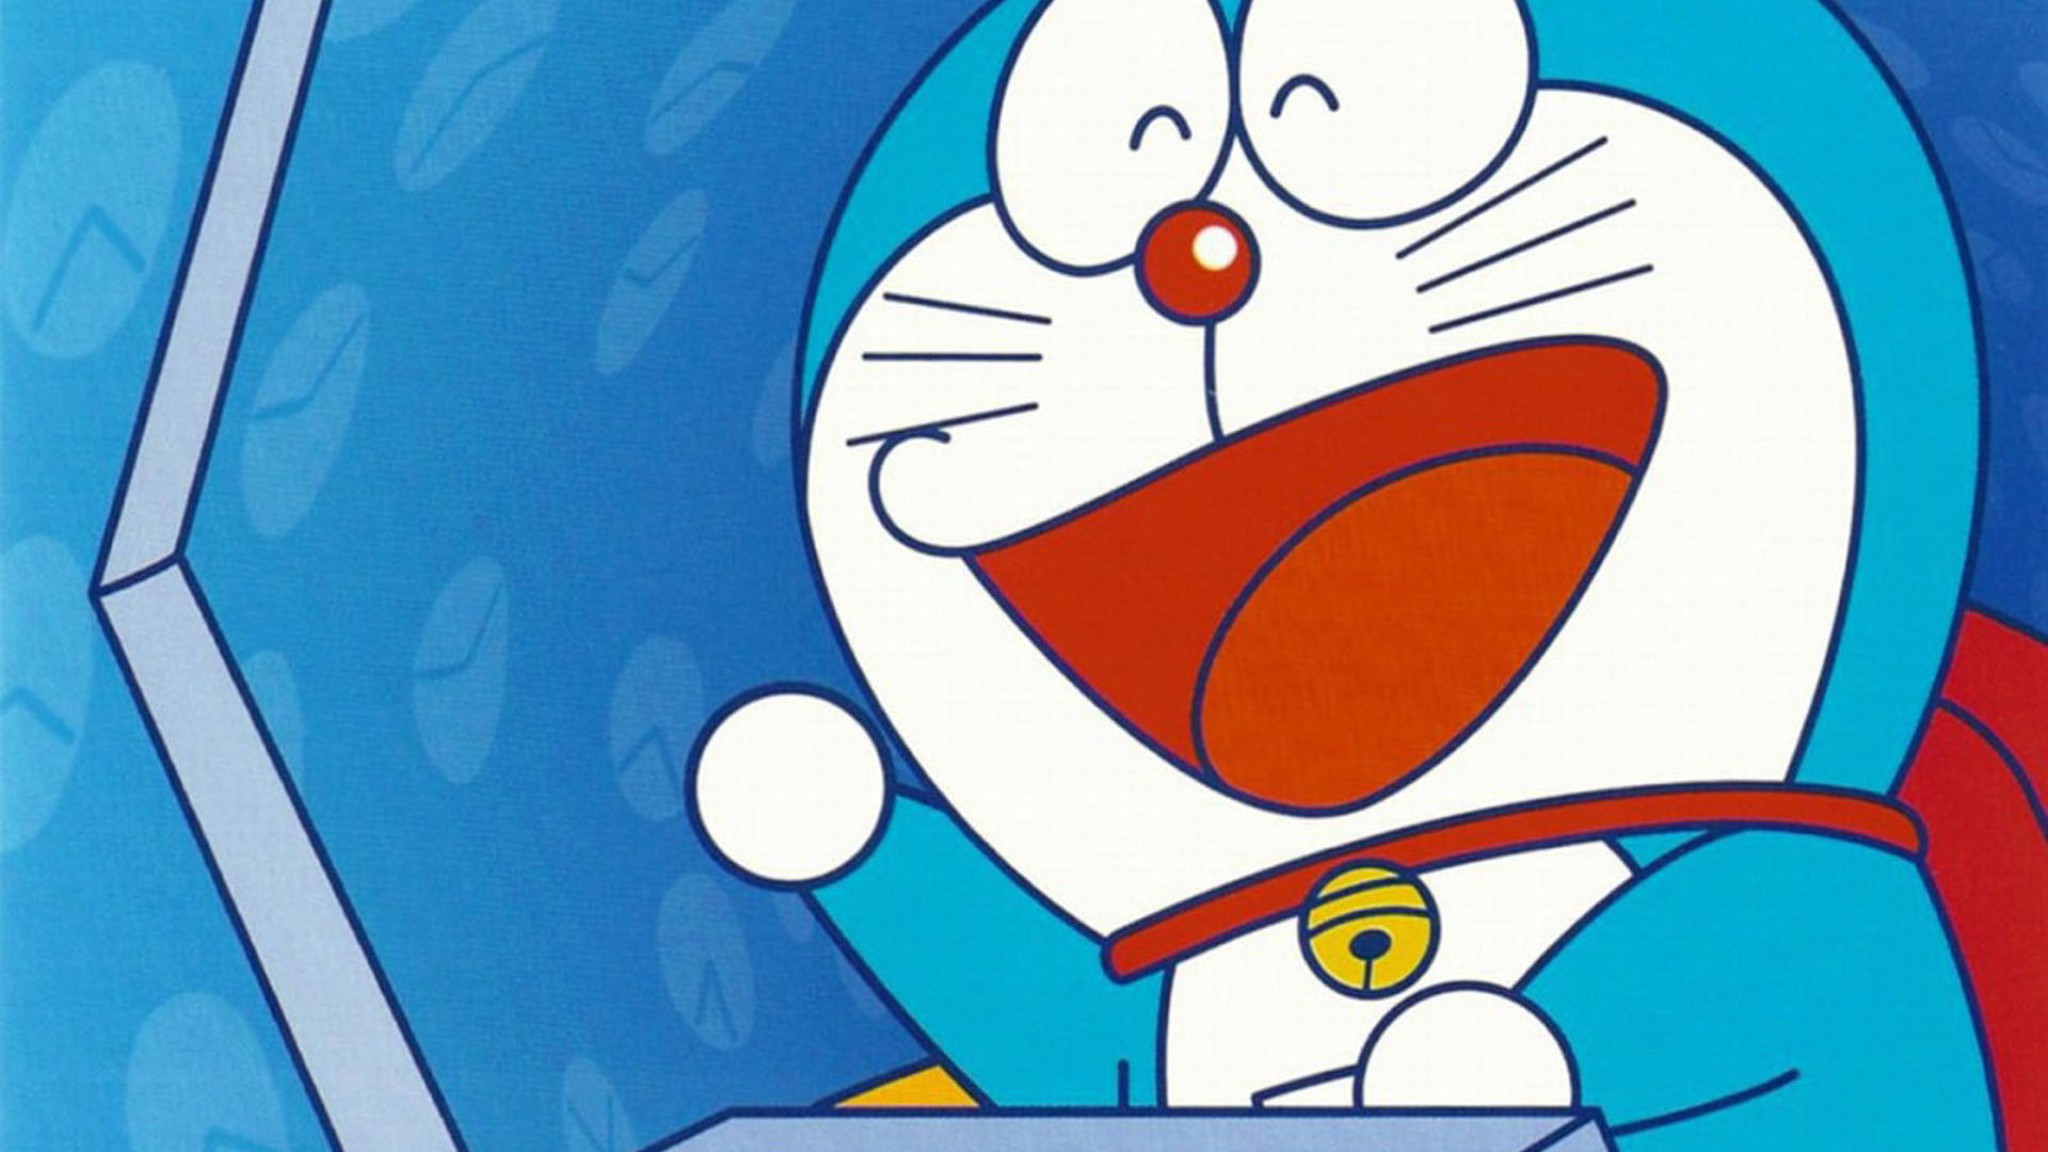 Doraemon Image Download Wallpaper - Gambar Doraemon Full Warna - HD Wallpaper 